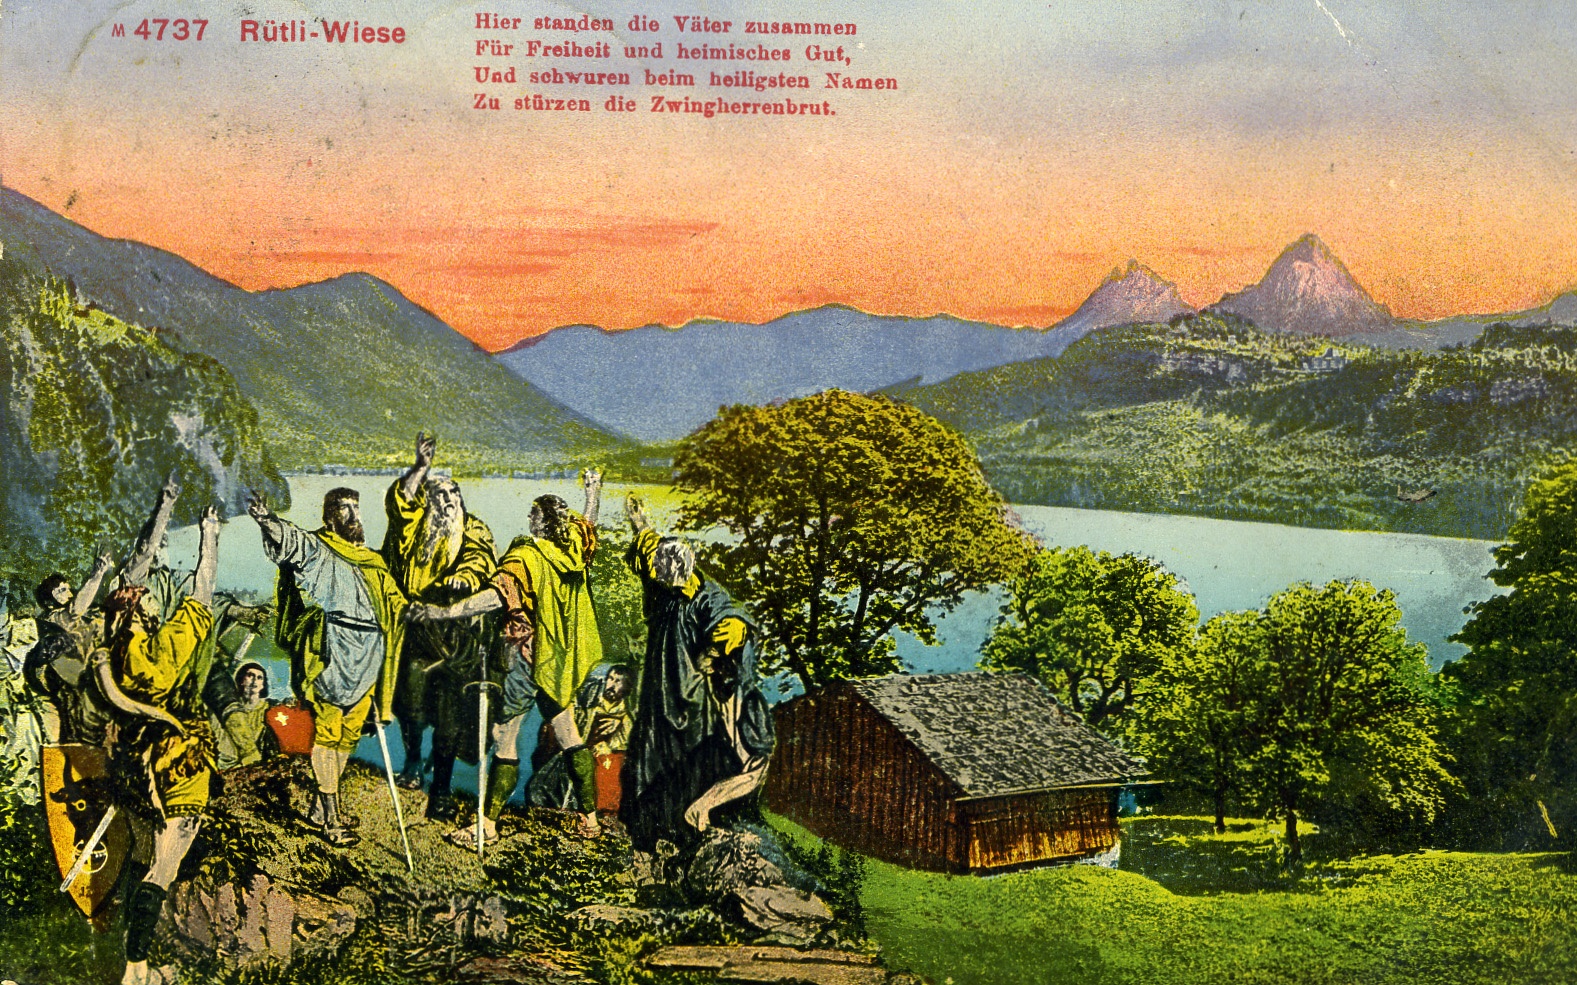 Postkarte Schweiz 1912 (Historisches Museum der Pfalz, Speyer CC BY)